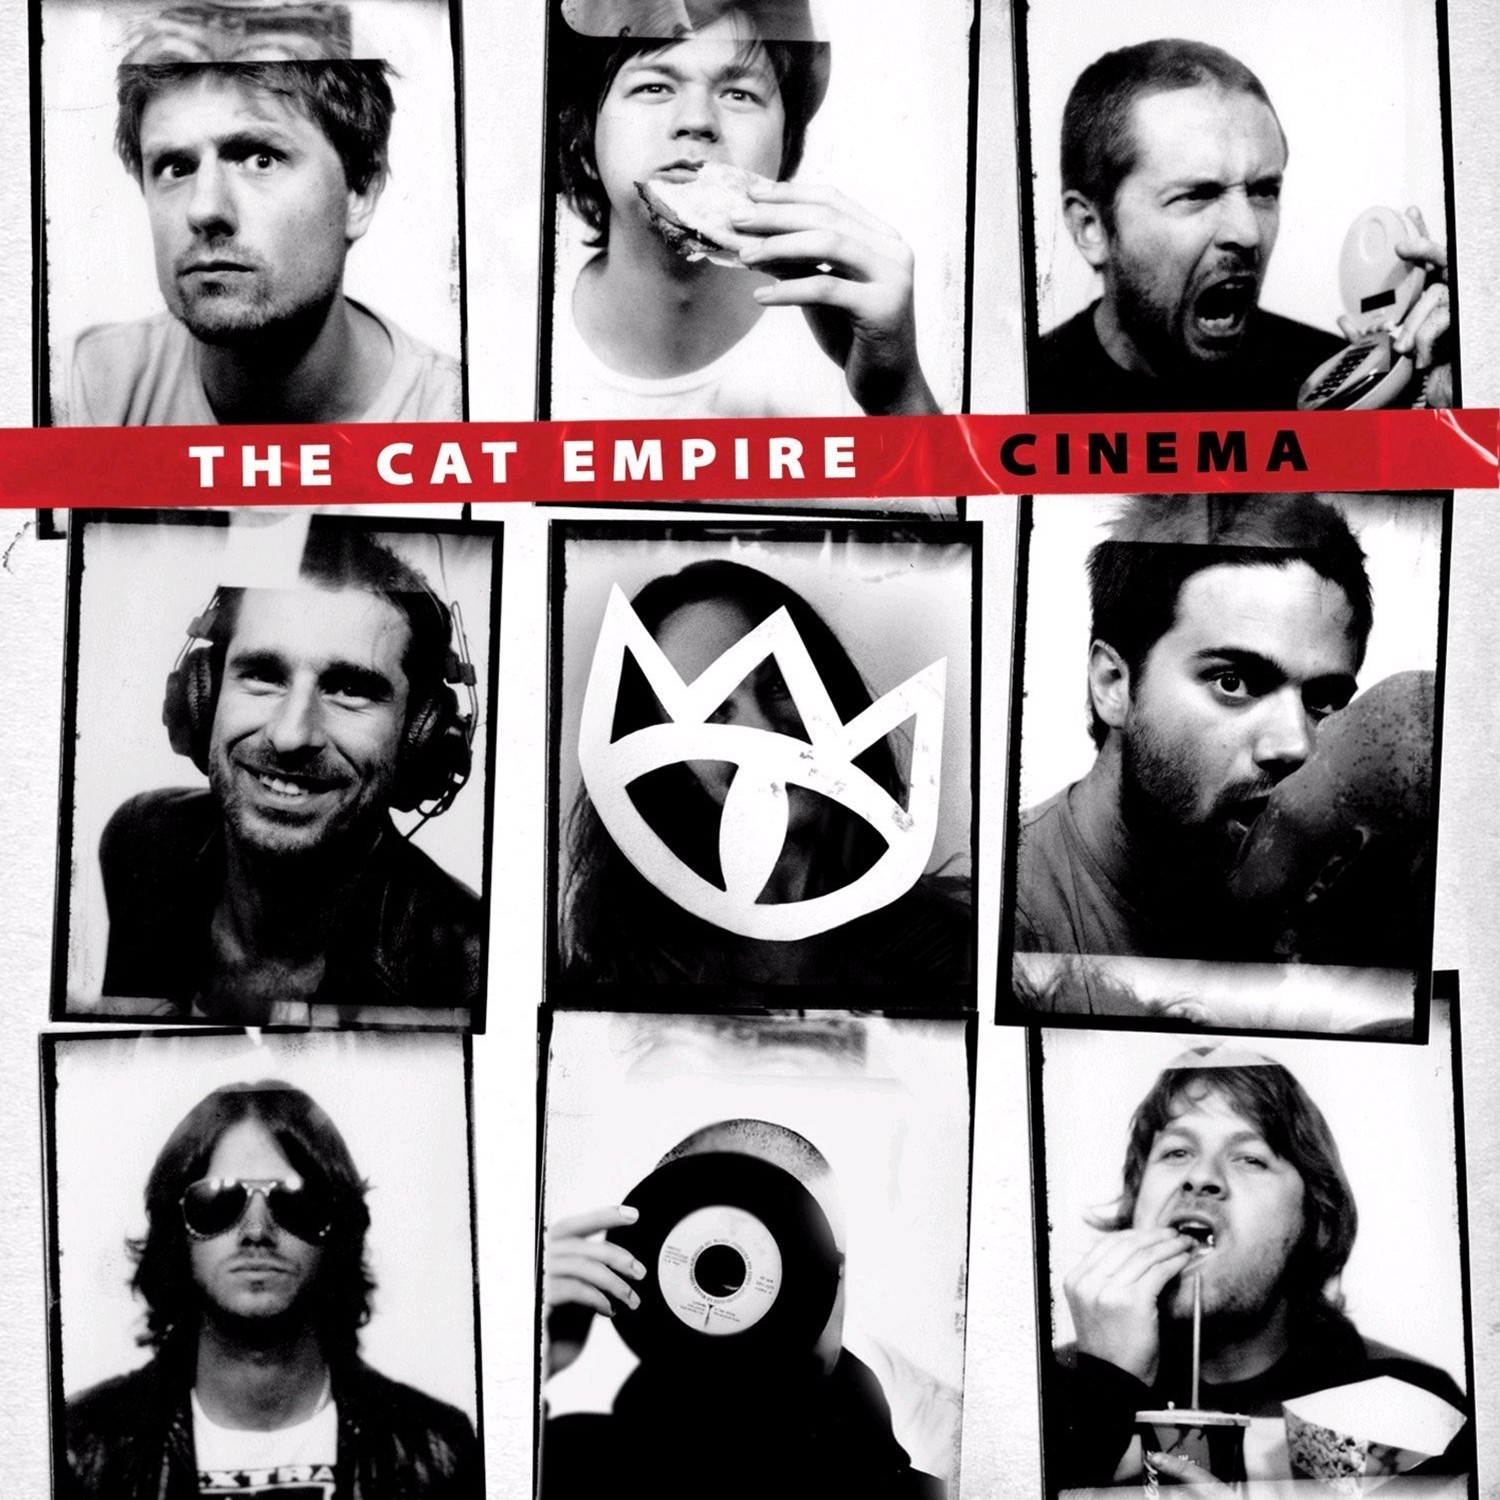 http://4.bp.blogspot.com/_bI5-8YnkkFA/TCQiNfA0d9I/AAAAAAAAEBU/xId_deqJum0/s1600/00-the_cat_empire-cinema-2010-front.jpg